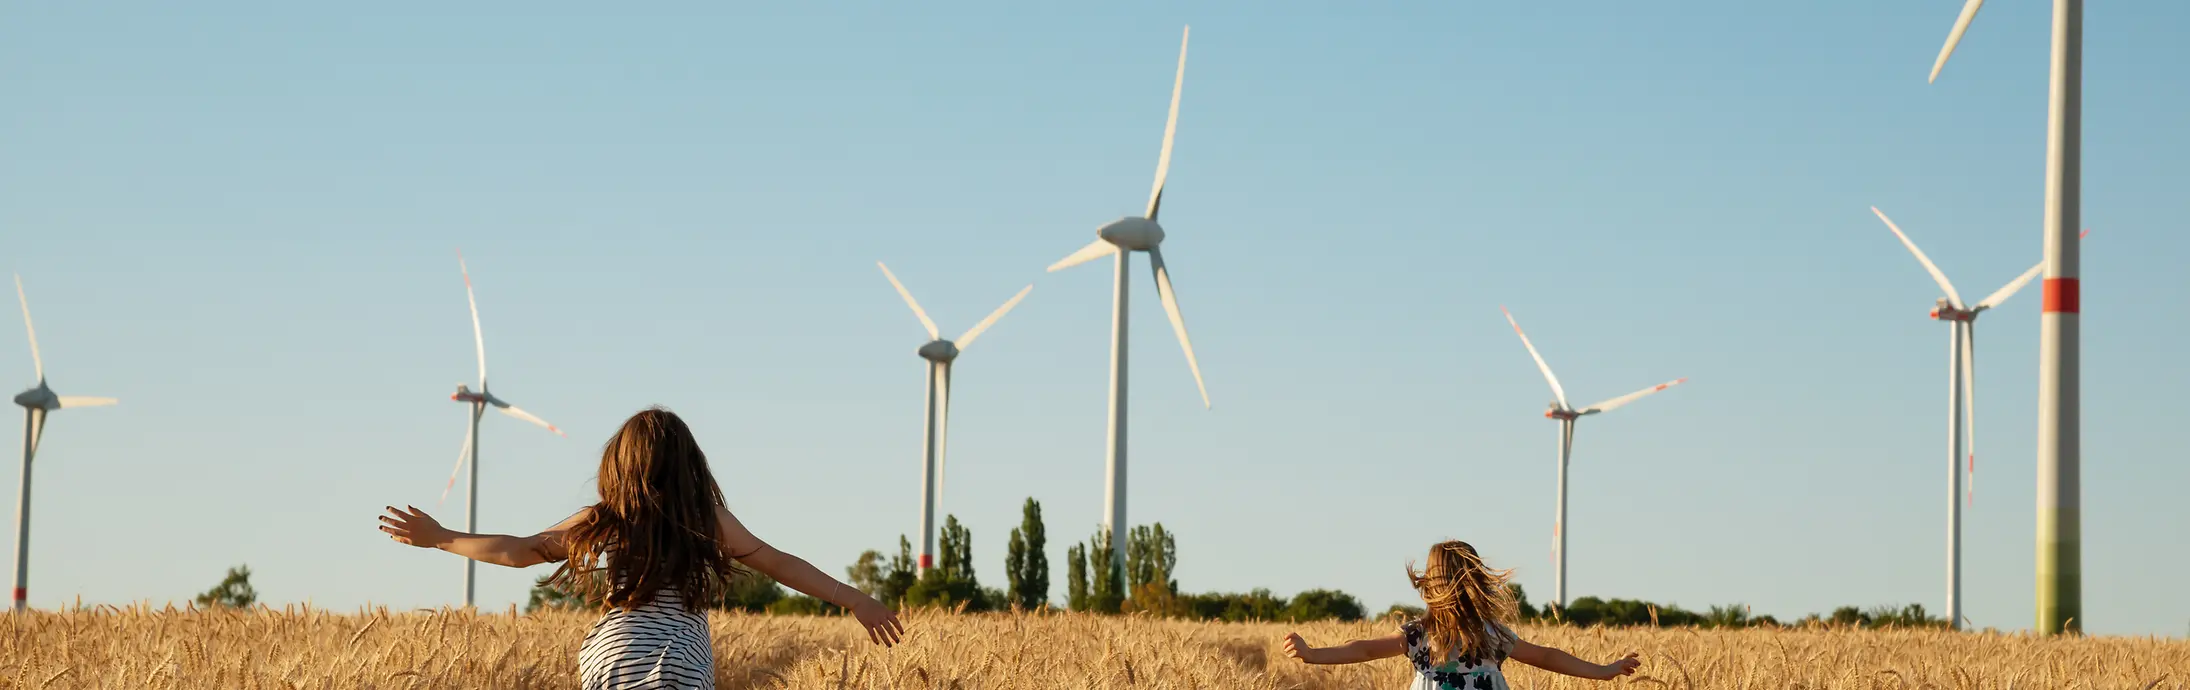 Dve dekleti, ki tečeta po koruznem polju s sodobnimi mlini na veter v ozadju